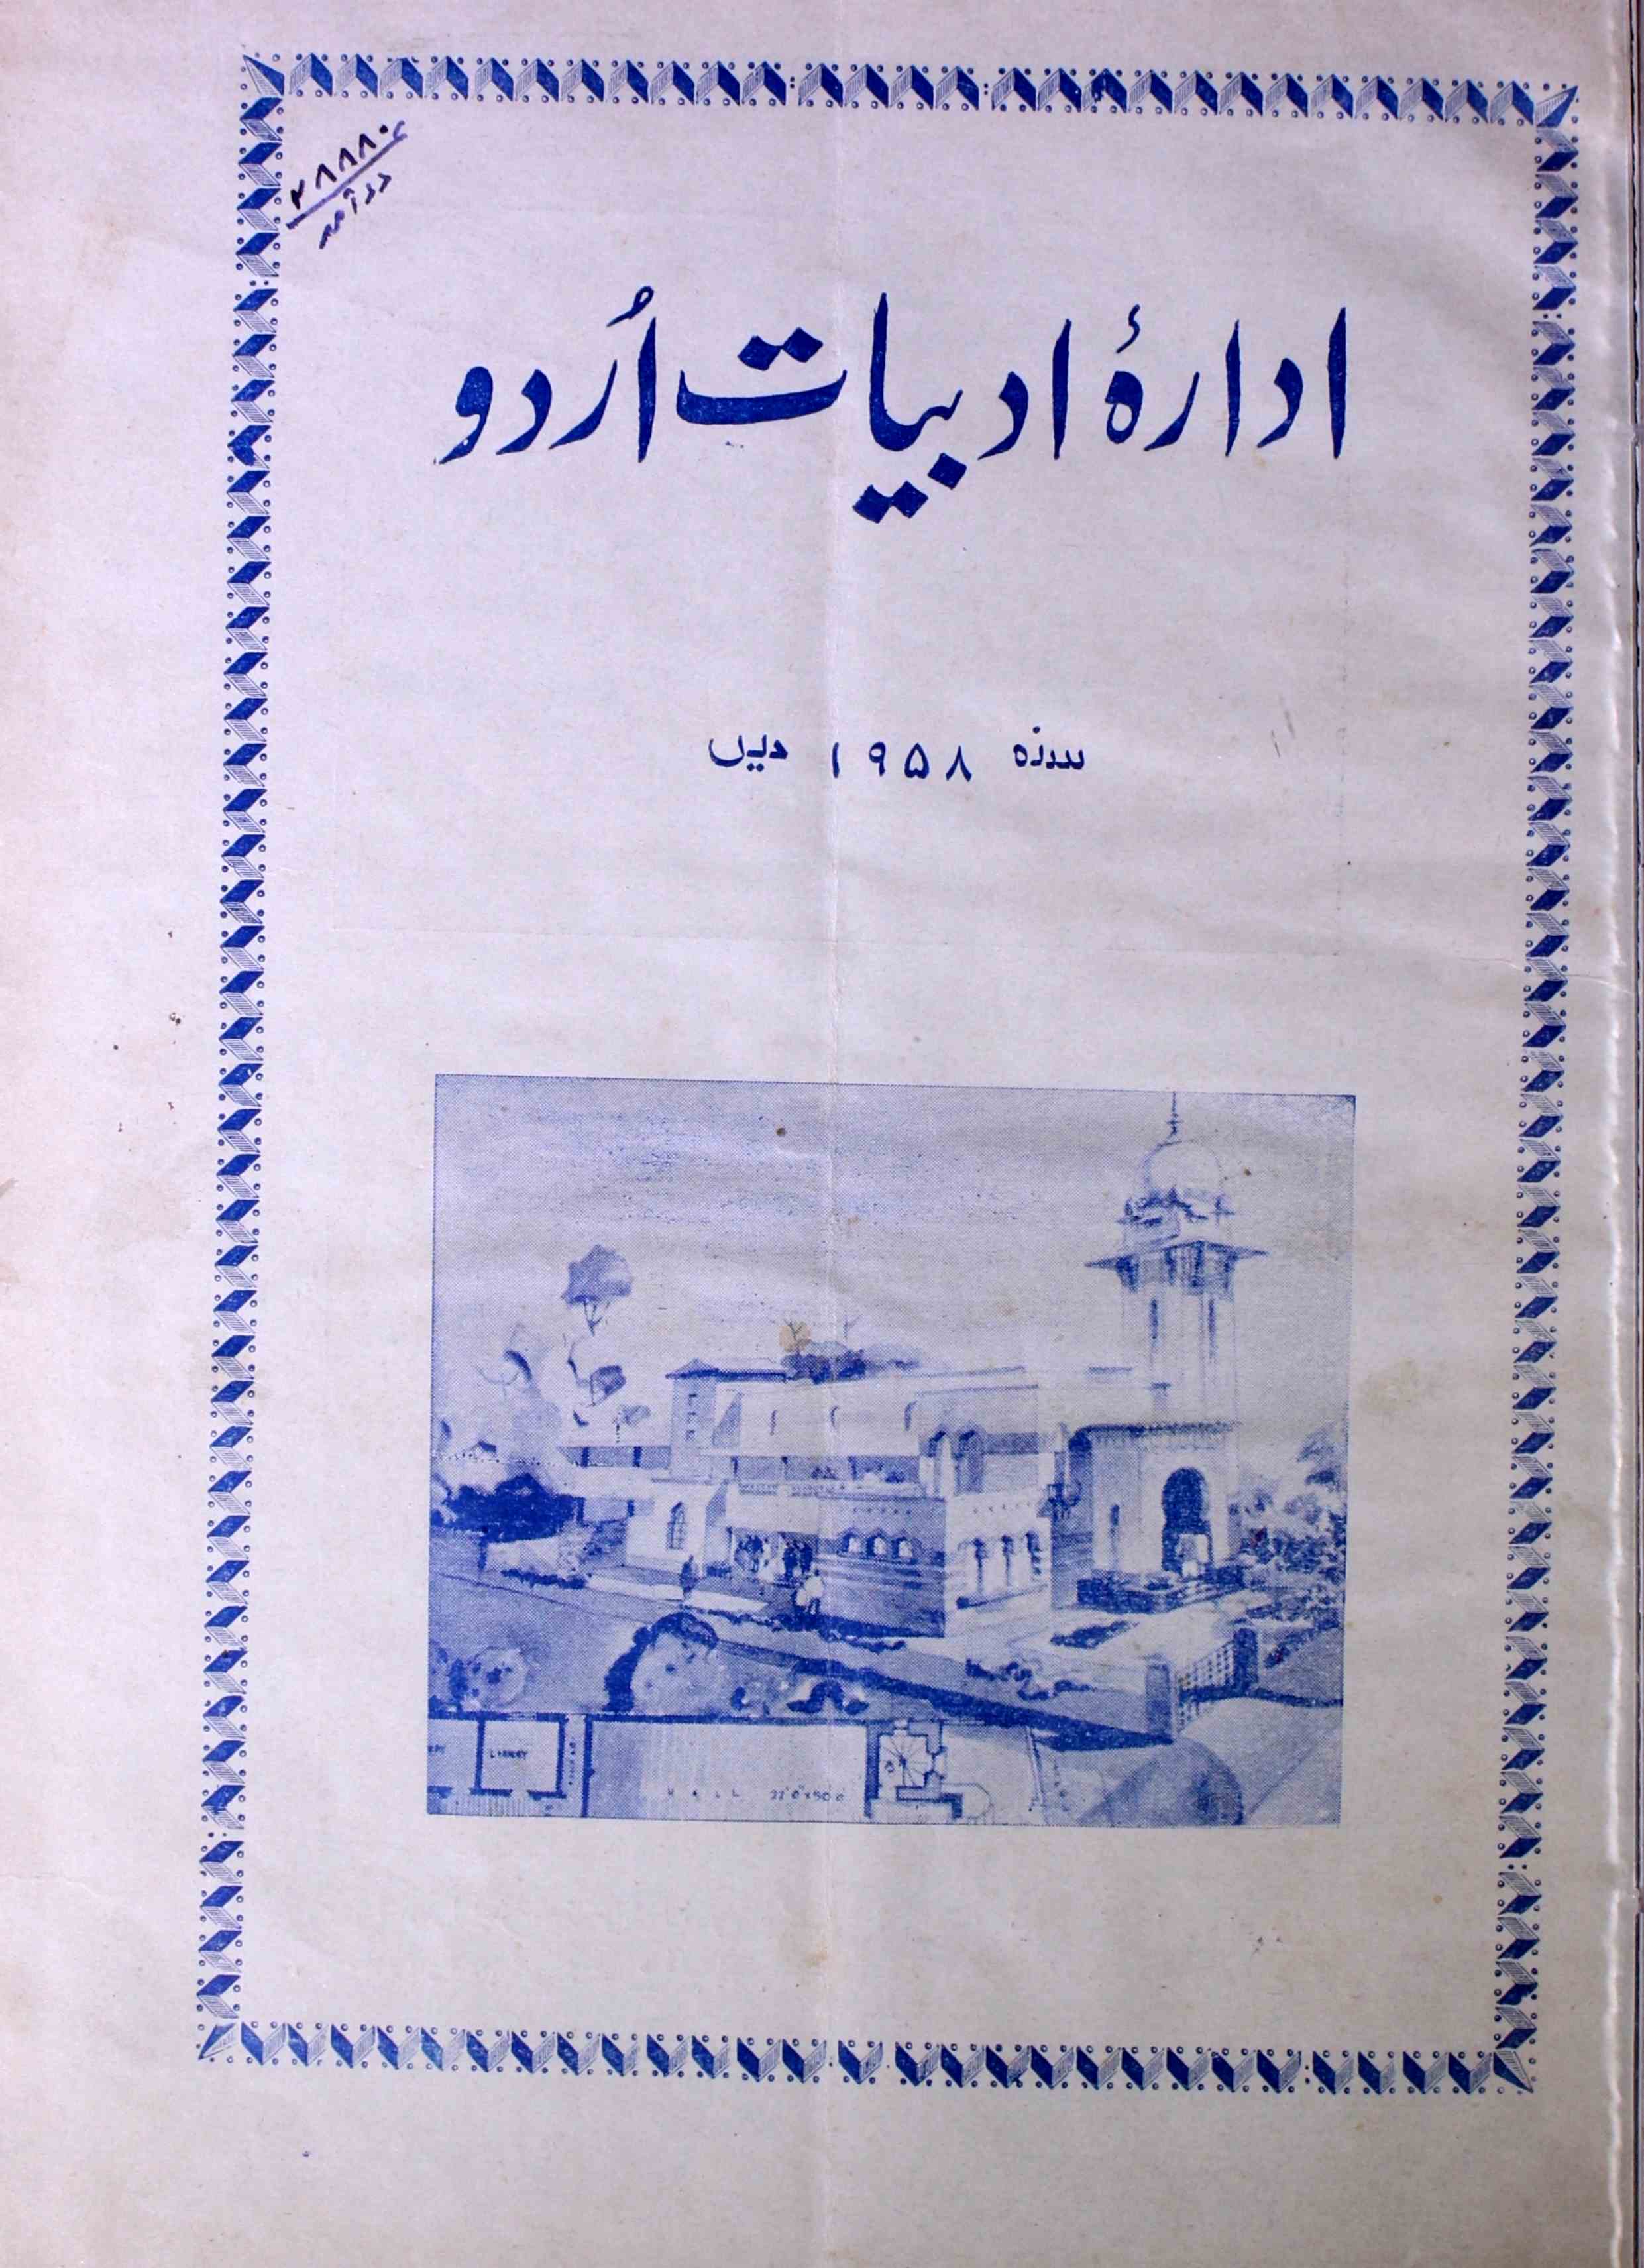 اداراہ ادبیات اردو